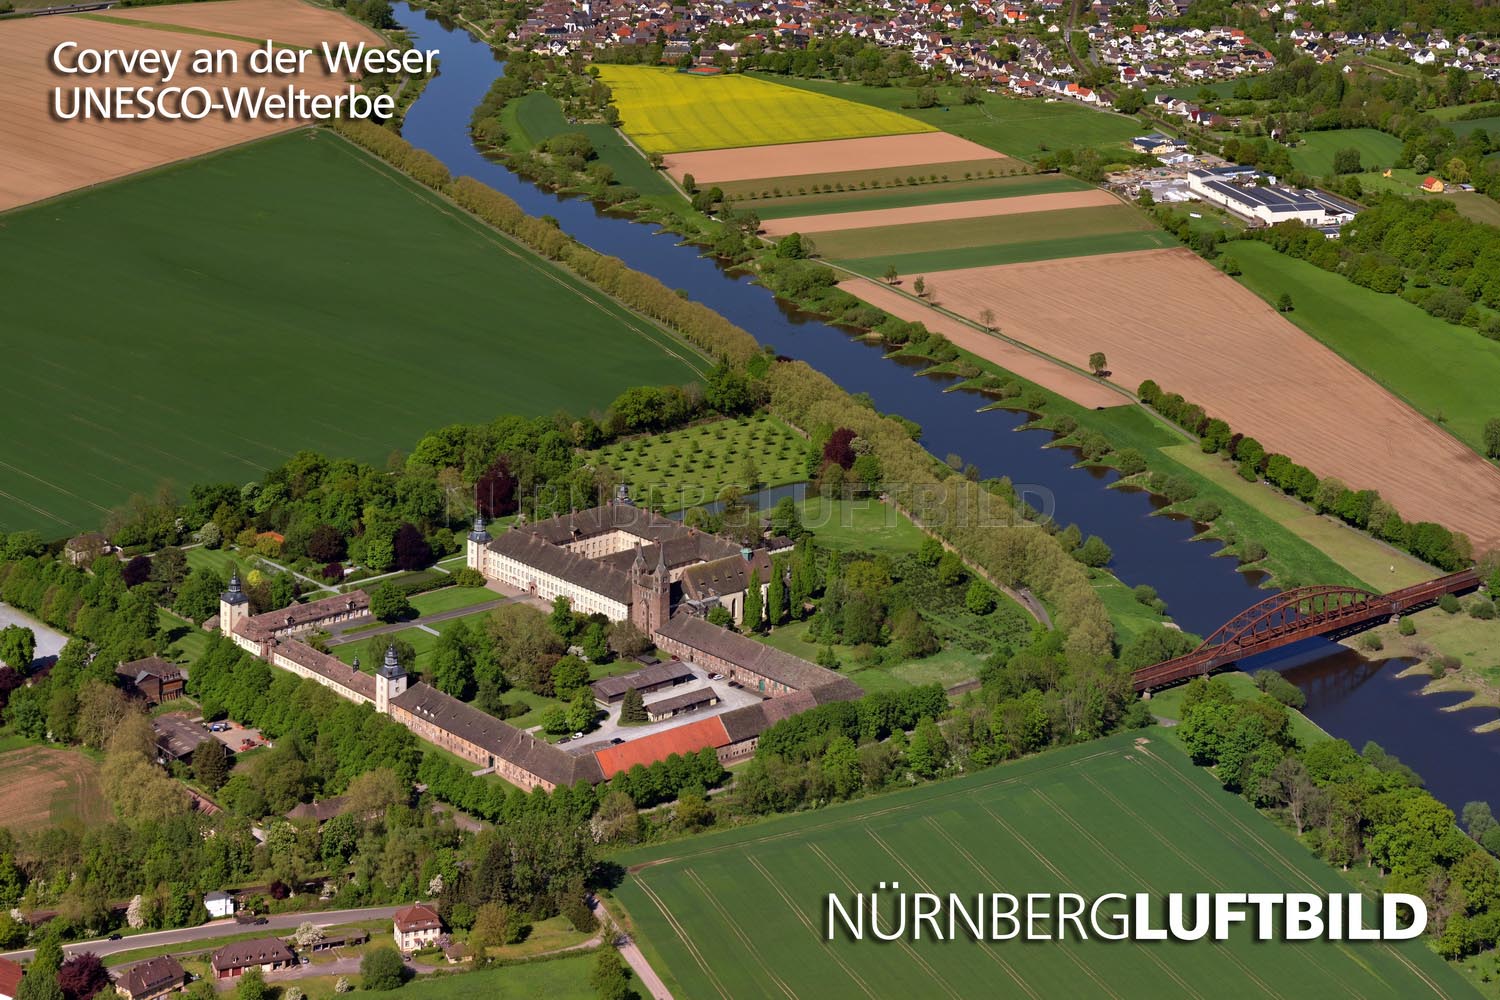 Corvey an der Weser, UNESCO-Welterbe